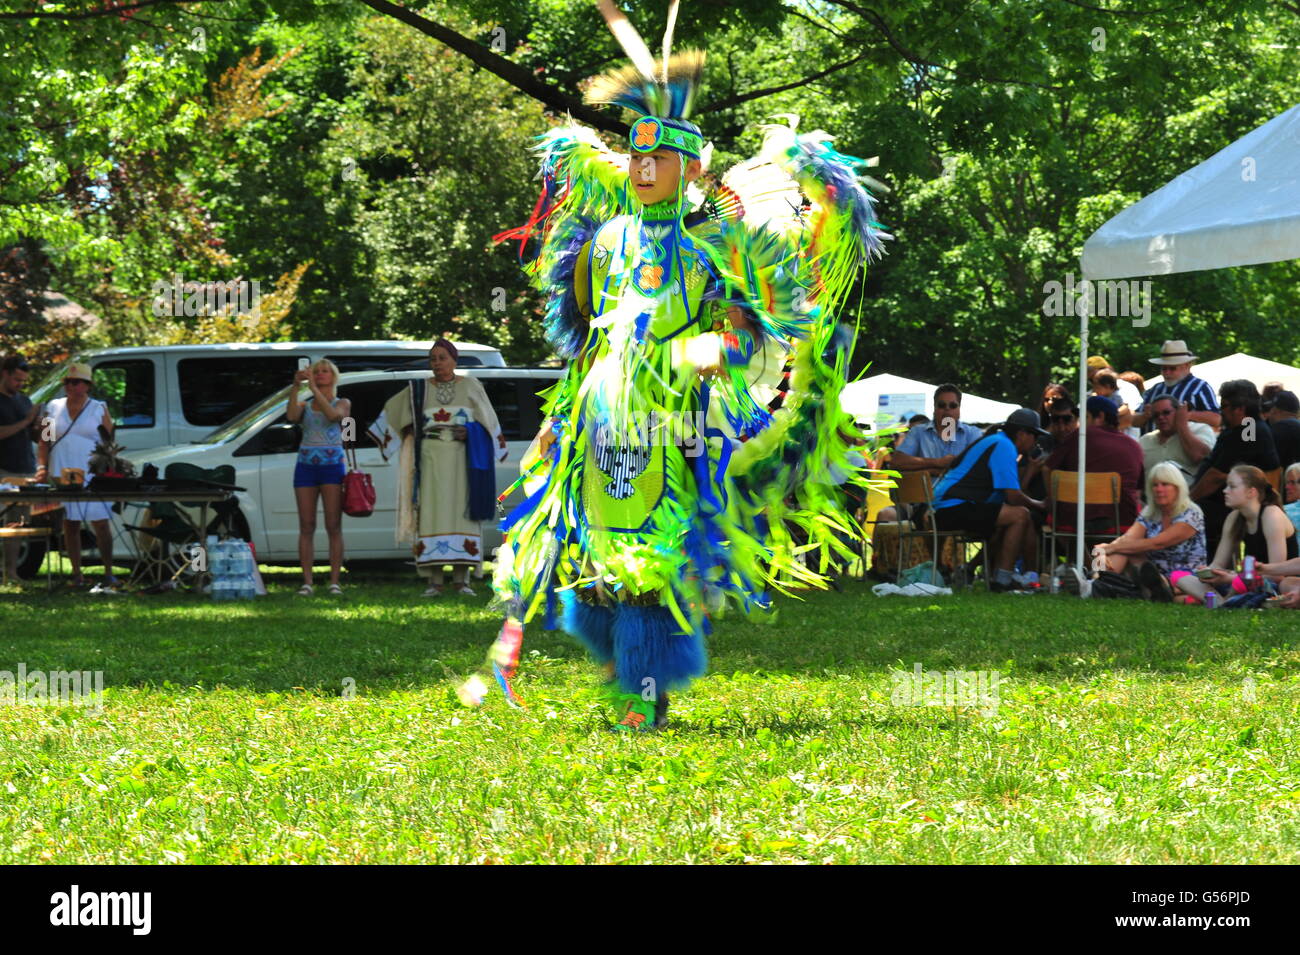 London, Ontario, Canada. Martedì 21 Giugno, 2016. Presto la Giornata della Solidarietà è celebrato a Londra, Ontario, con balli, percussioni e un Powwow. Persone provenienti da tutte le comunità sono stati invitati ad abbracciare il patrimonio di cultura e le conquiste delle Prime Nazioni, Inuit e Métis popoli in Canada. Ontario è la casa di più di 300.000 indigeni e non vi è stato uno sforzo continuo per un maggiore riconoscimento e una legali nazionali di vacanza per i popoli aborigeni. Credito: Jonny bianco/Alamy Live News Foto Stock